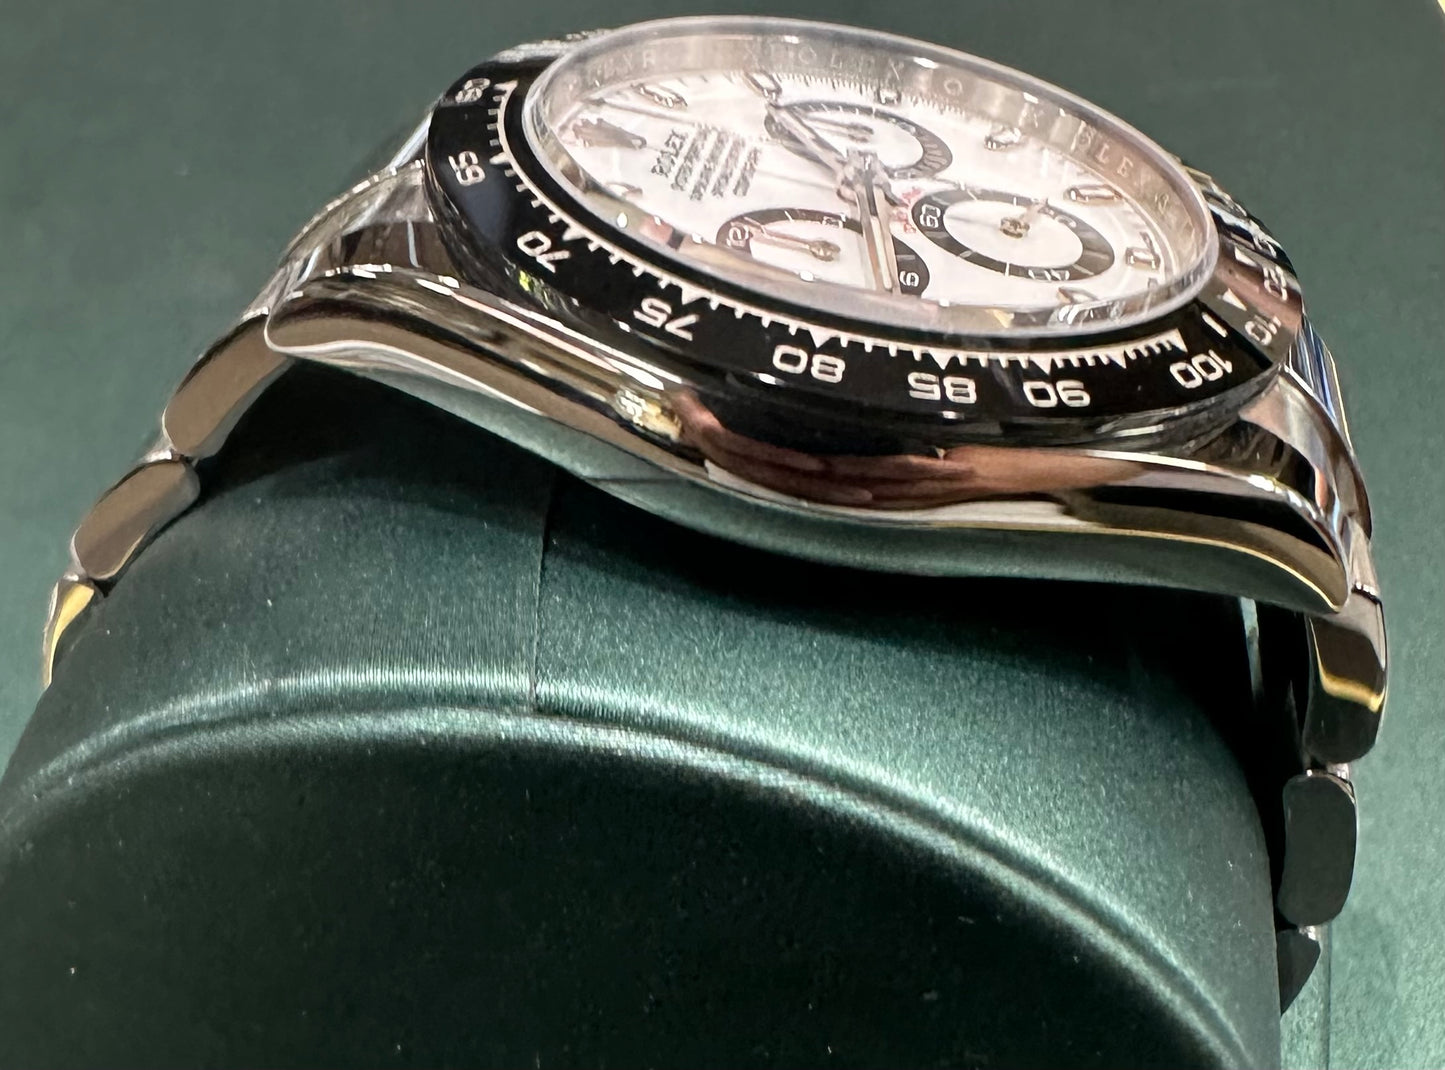 Rolex Daytona 116500 white dial 2021